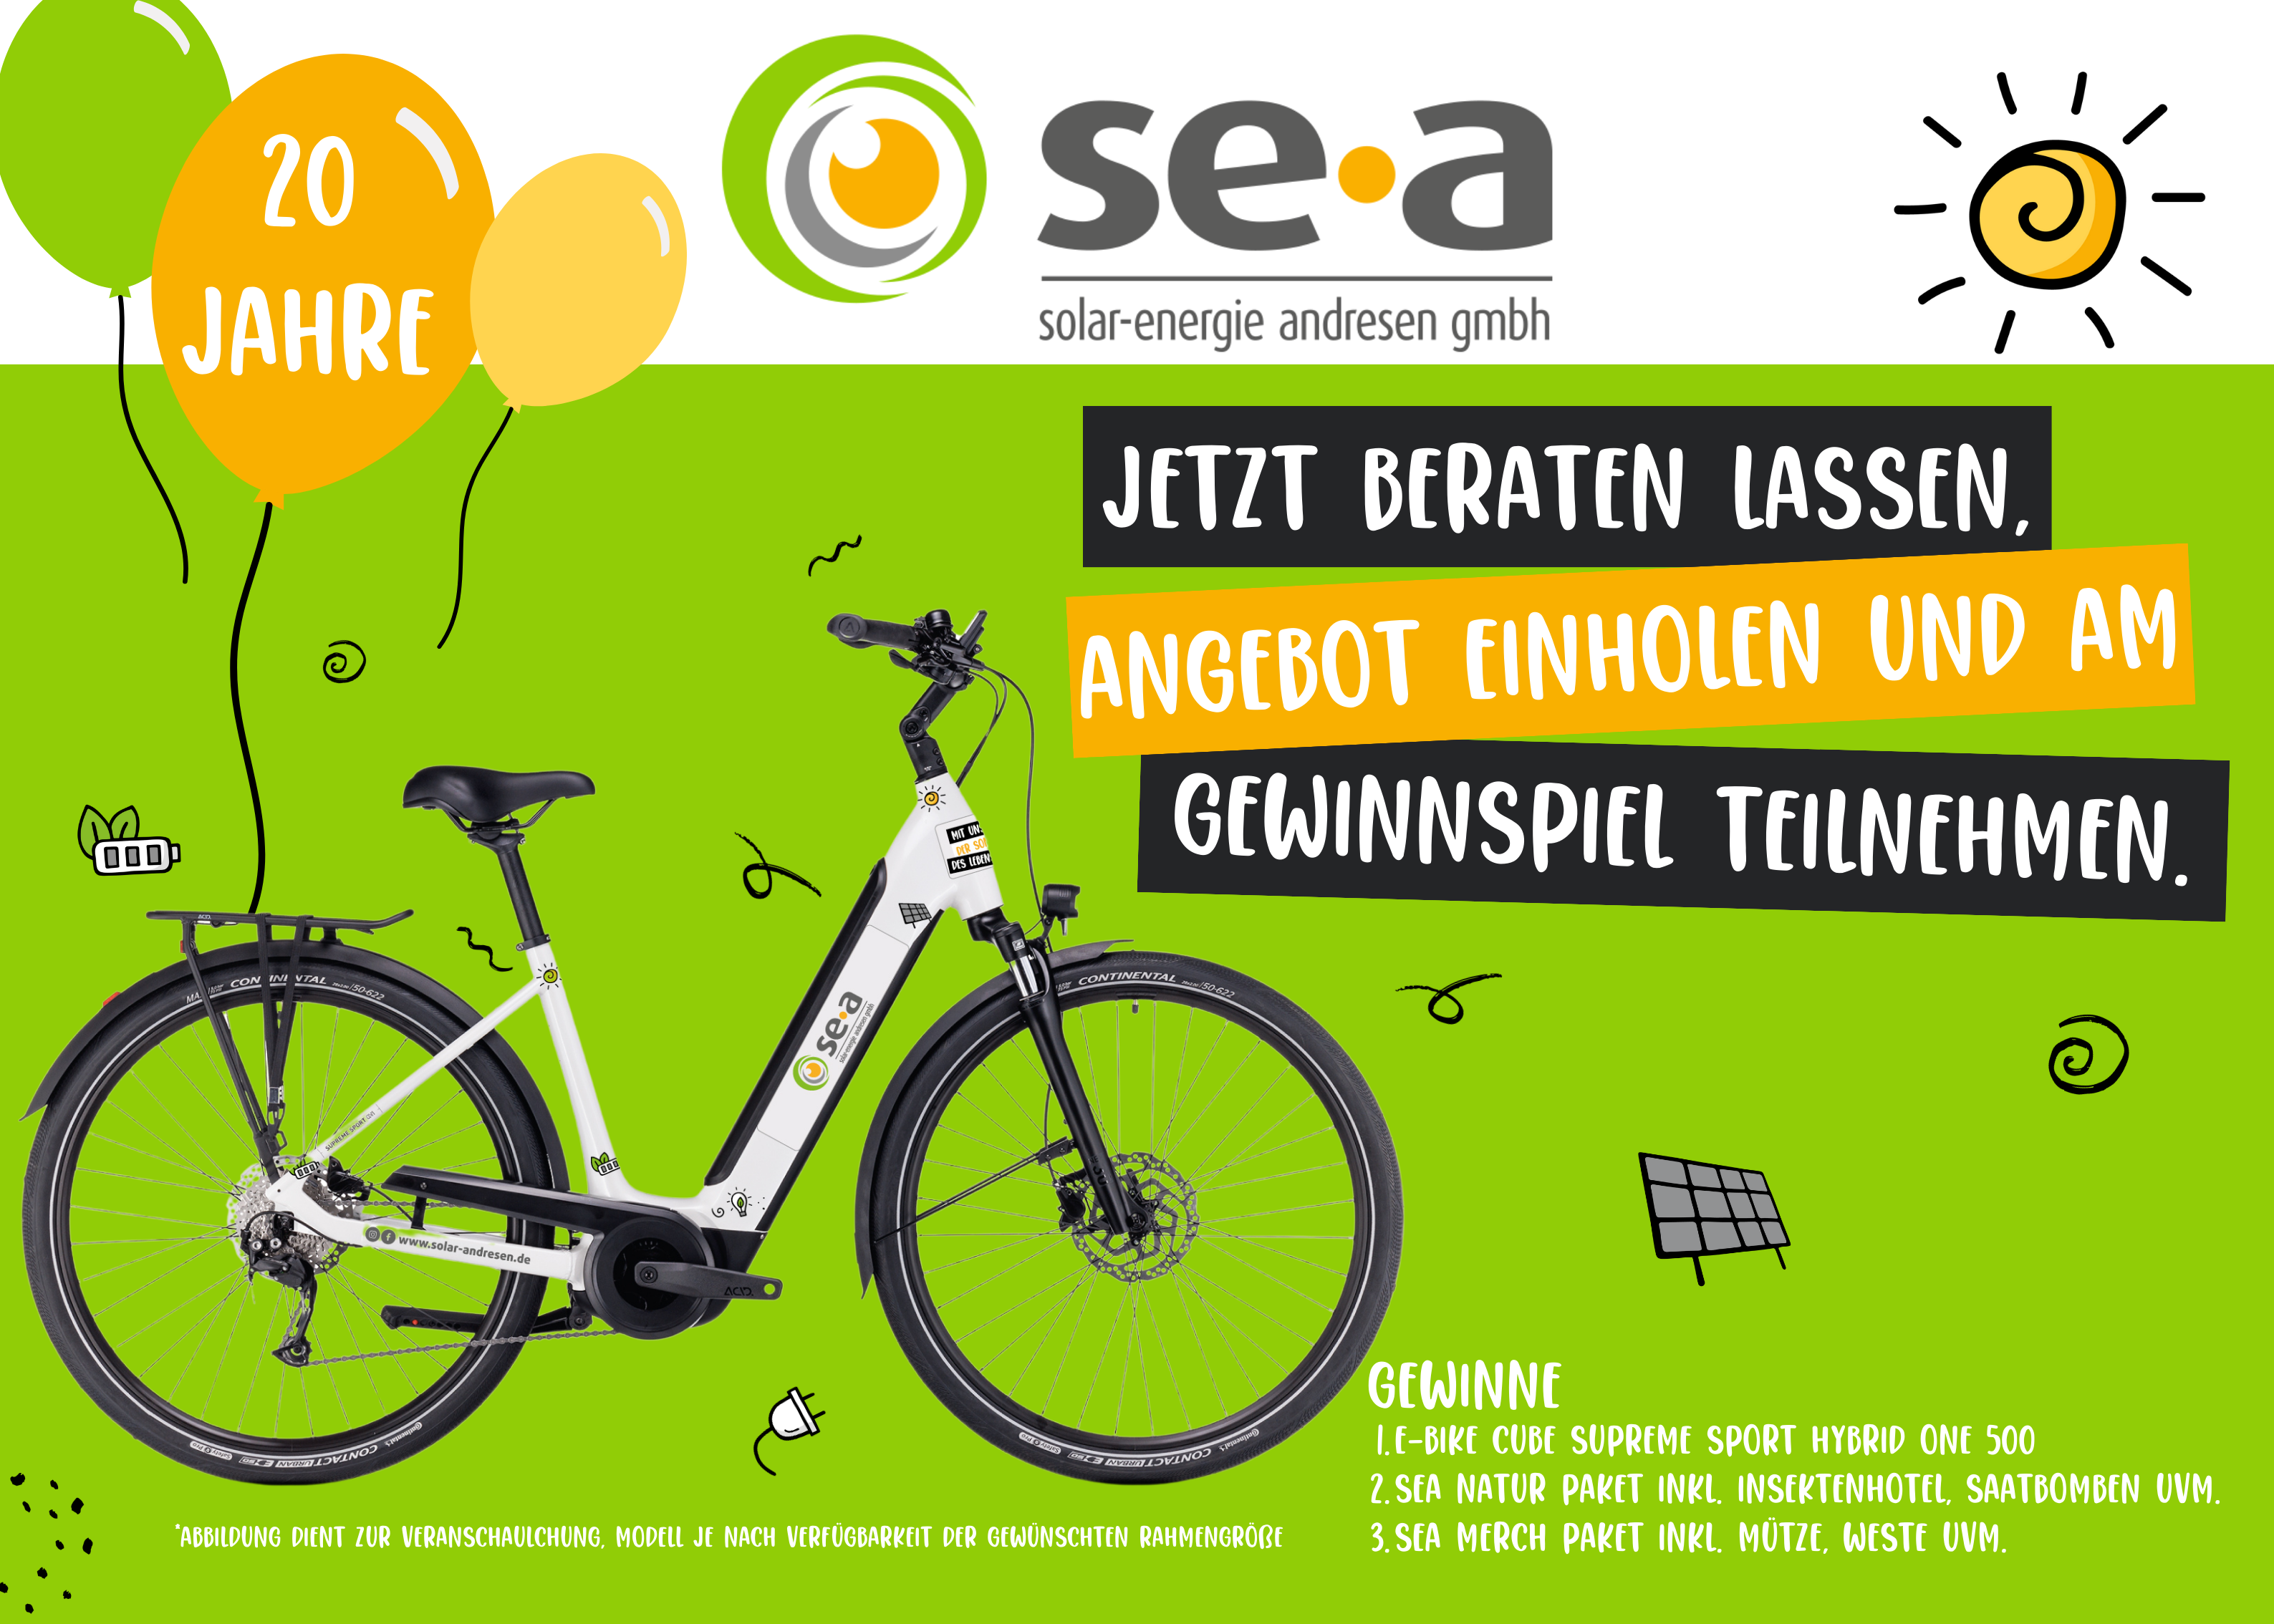 E-Bike im sea Design "Jetzt beraten lassen, Angebot einholen und am Gewinnspiel teilnehmen.